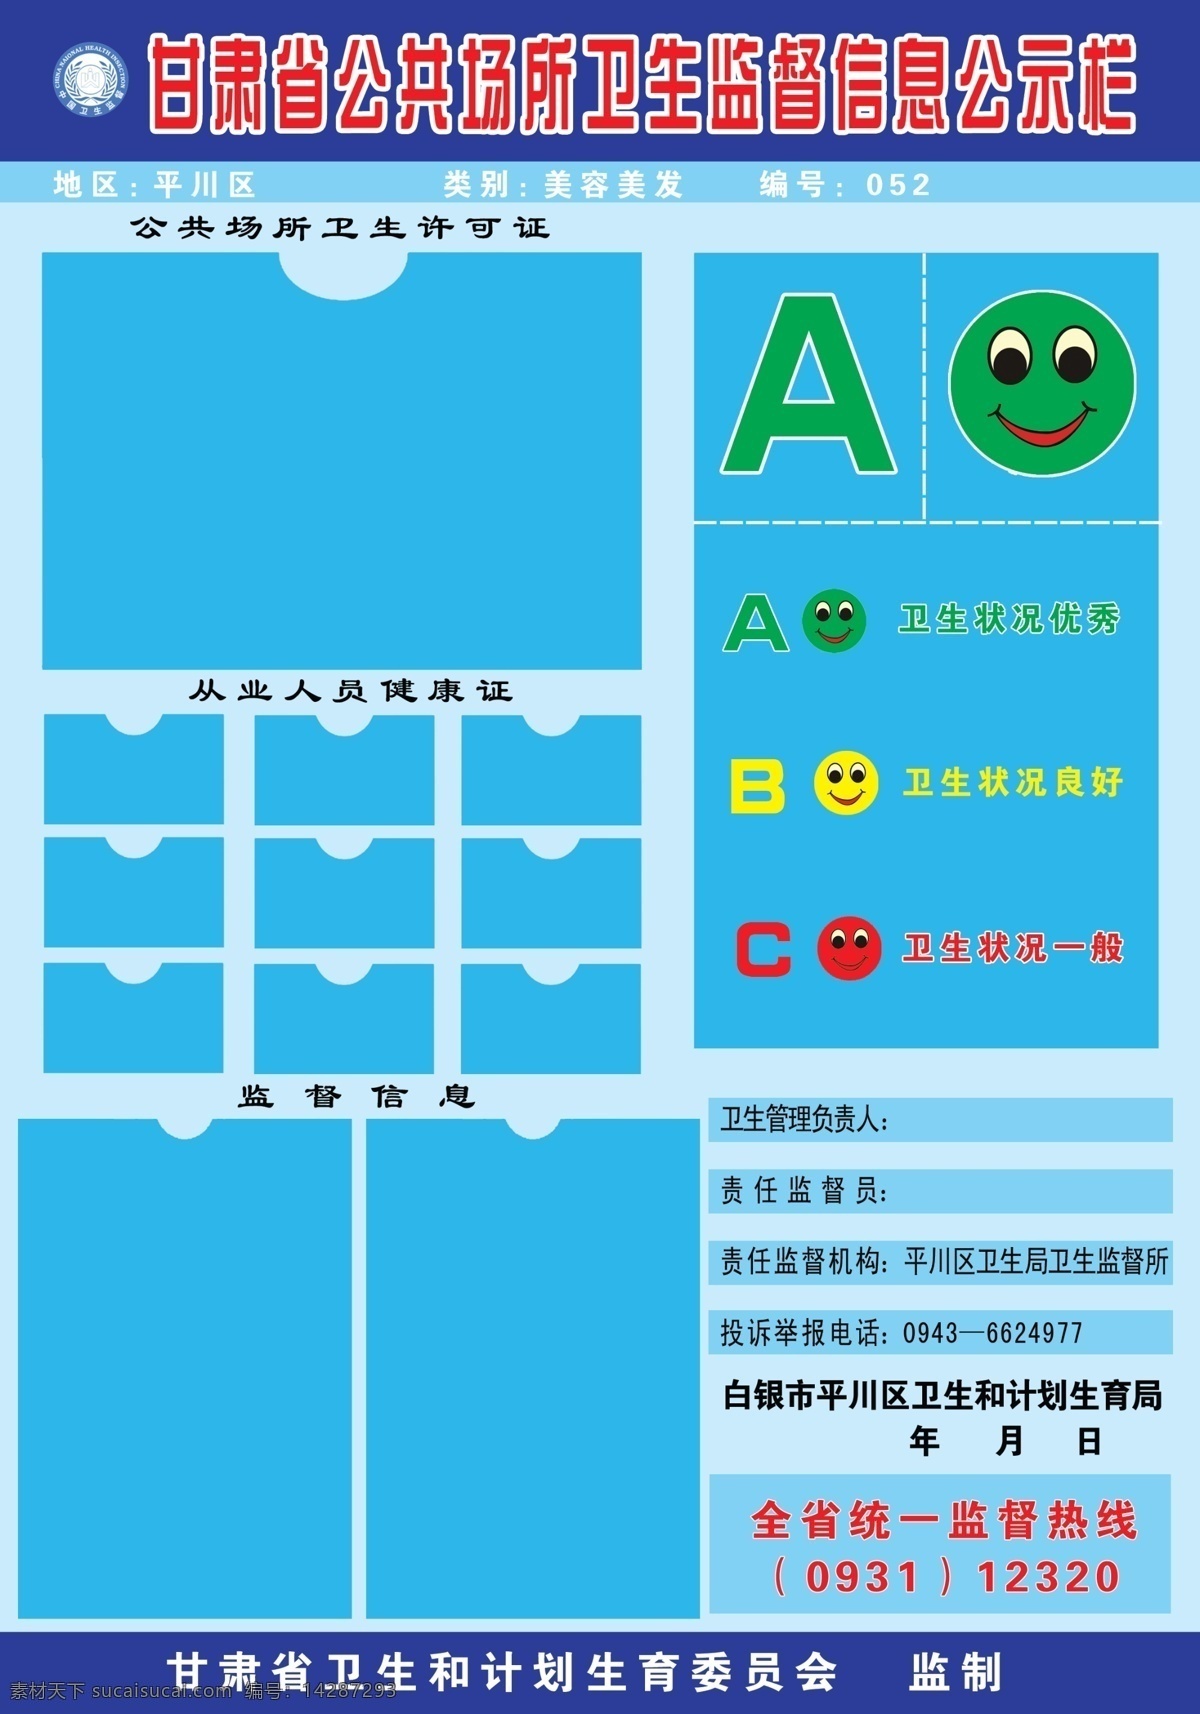 甘肃省 公共场所 卫生监督 信息 公示 蓝色背景 笑脸 绿色 红色 psd分层 分层